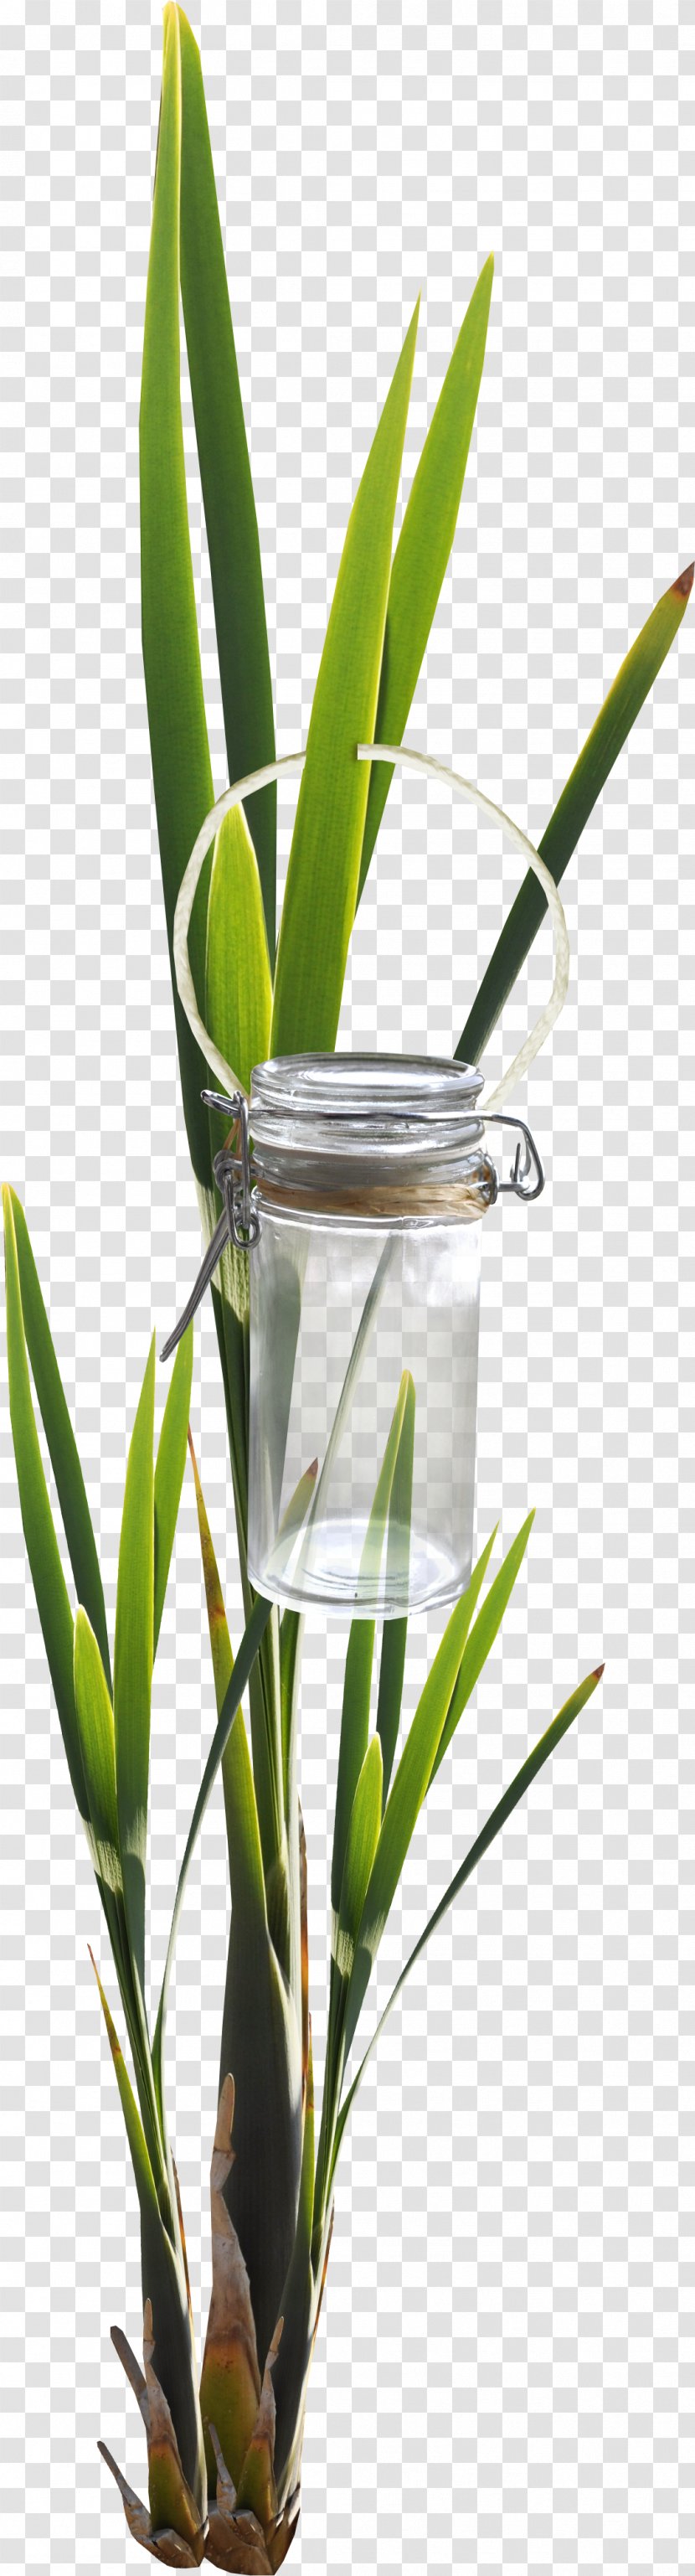 Bottle Leaf Glass Green - Gratis - Foliage Transparent PNG